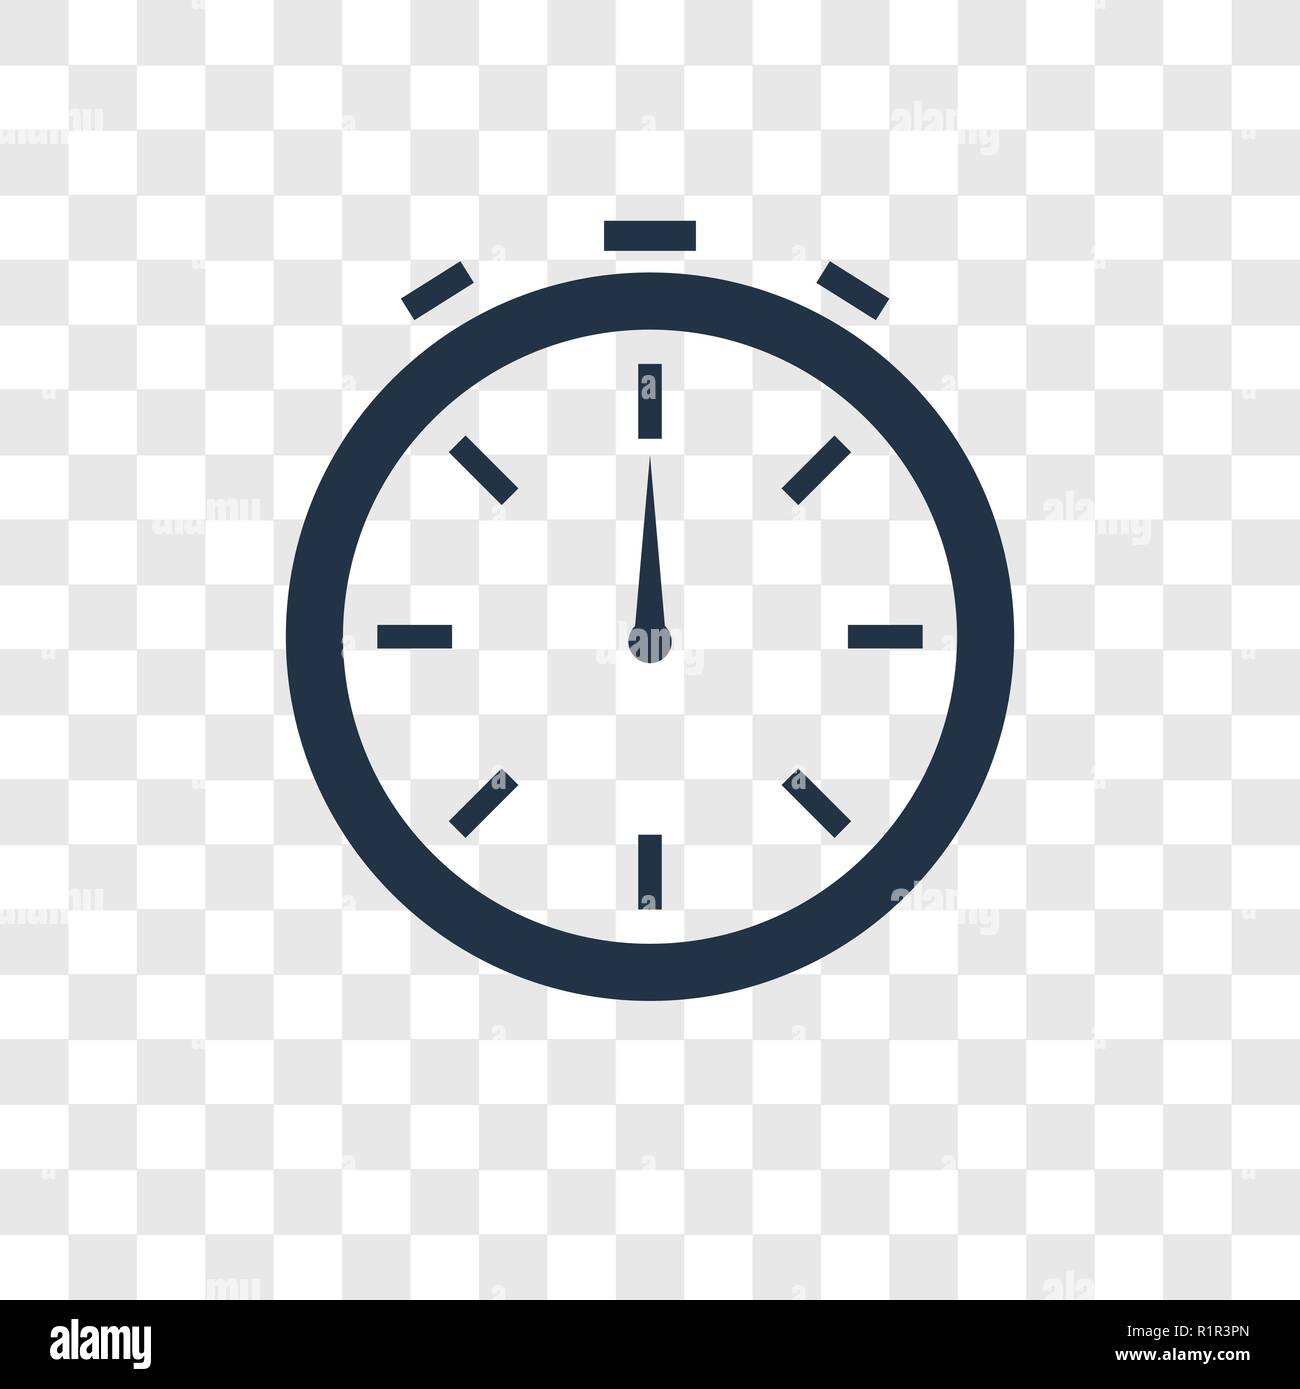 Đồng hồ bấm giờ trên nền trong suốt sẽ giúp bạn hoàn thành các công việc trong thời gian ngắn nhất mà không phải e ngại lạm quyền, đã đến lúc bạn trao quyền cho sự chuẩn xác trong hành động. Cùng ngắm nhìn hình ảnh cực kỳ độc đáo của một chiếc đồng hồ hiện đại và sang trọng.